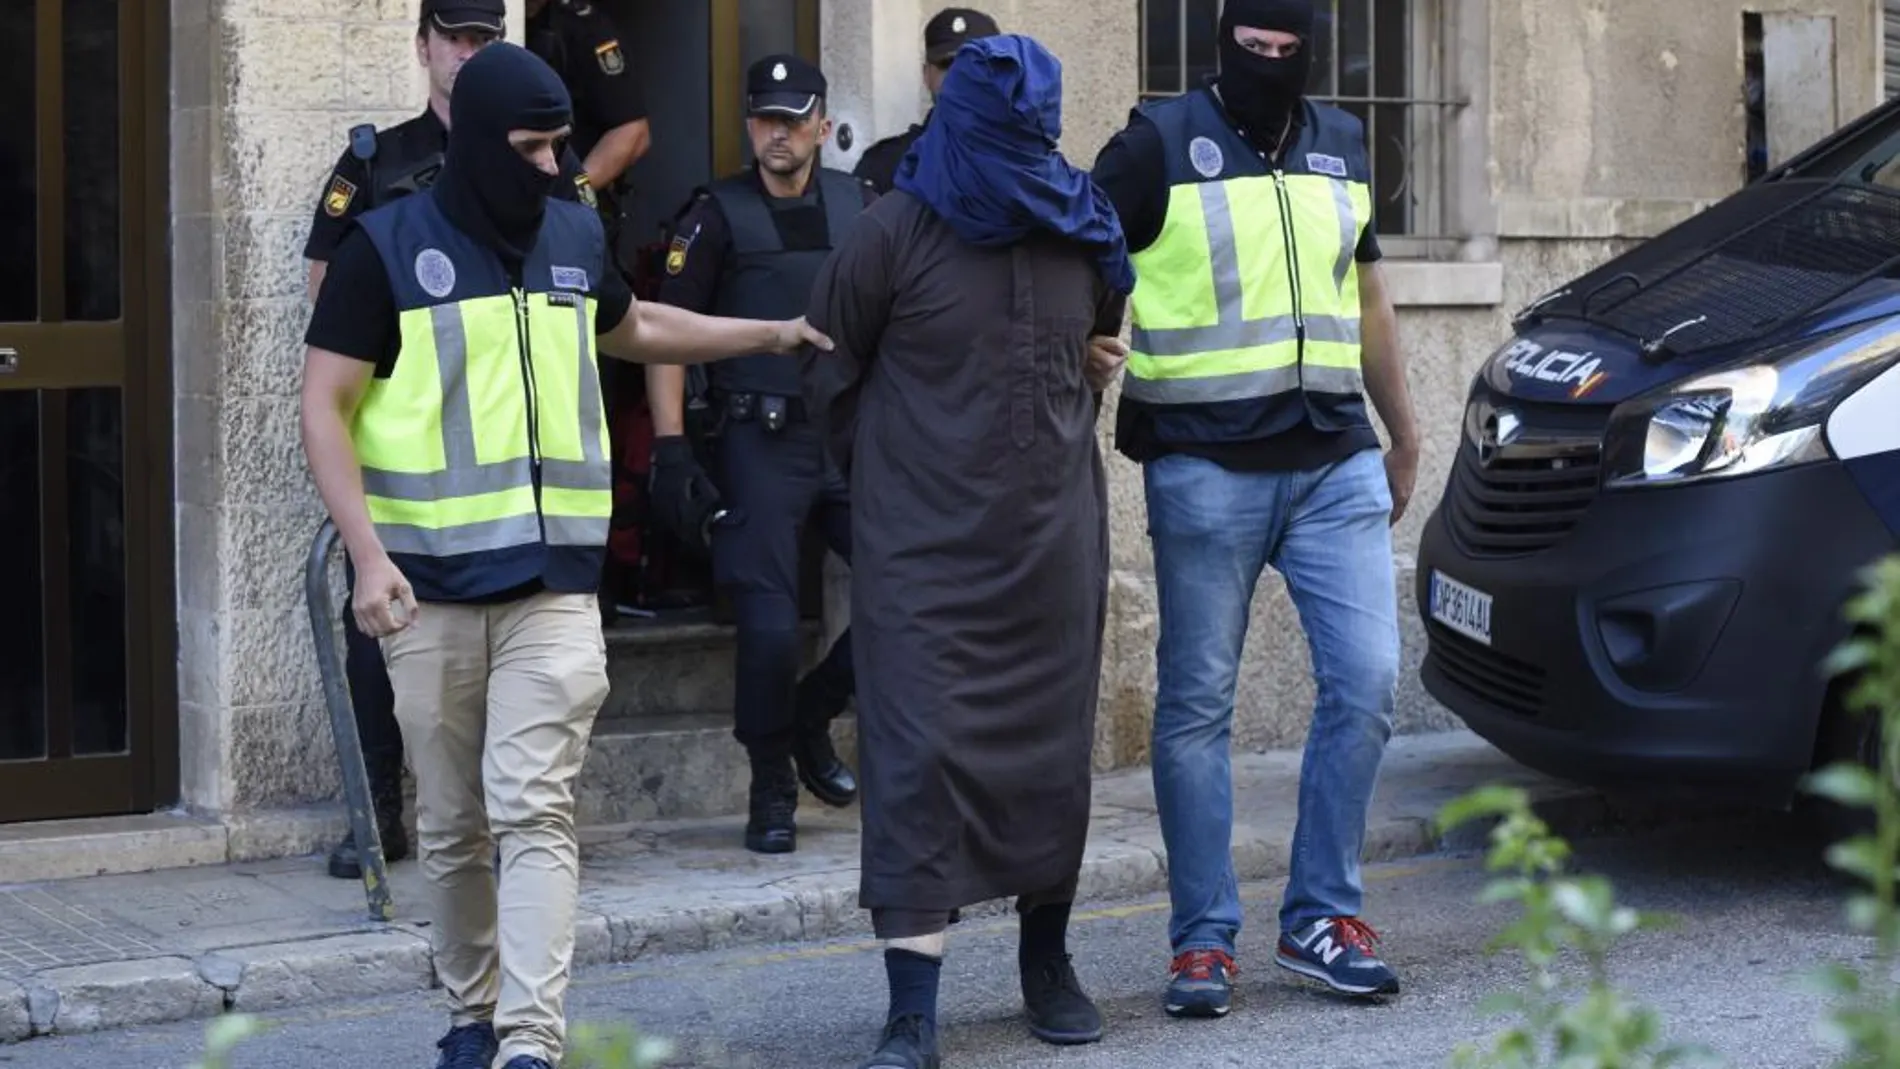 Efectivos de la Policía trasladan a un hombre detenido en la localidad de Inca (Mallorca), dentro de la operacióón anti yihadista desarrollada en la isla